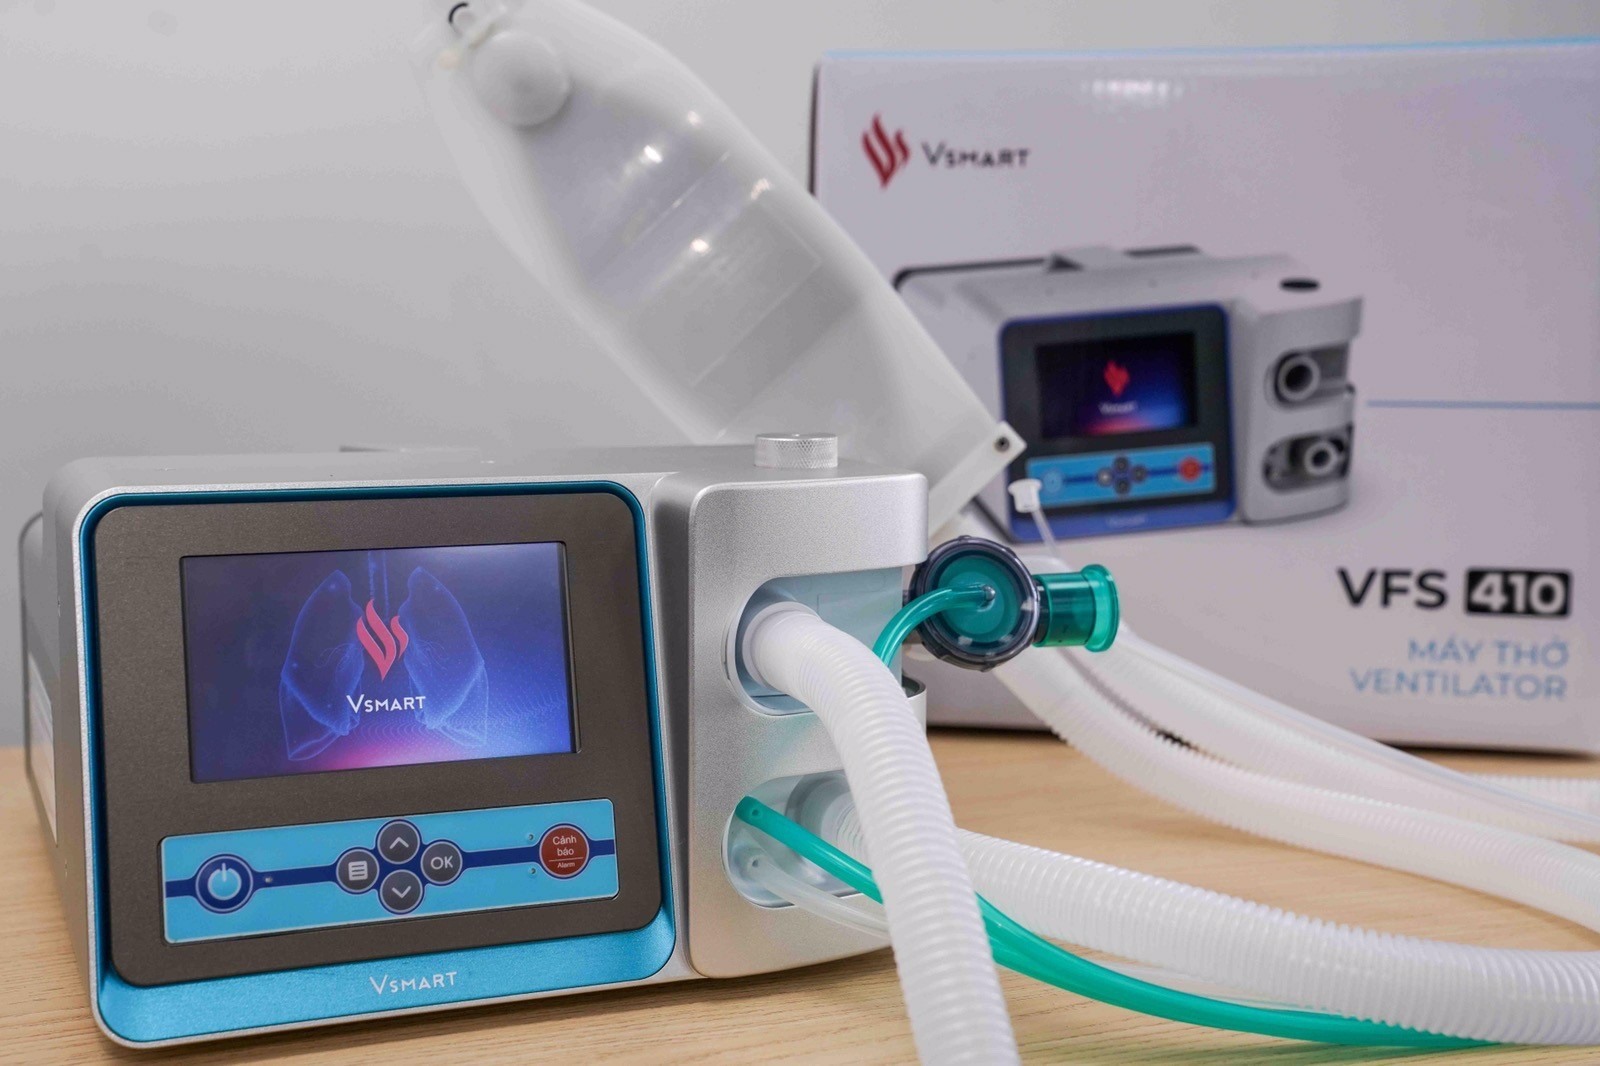 Vingroup hoàn thành 2 mẫu máy thở phục vụ điều trị COVID-19. Ảnh: Vingroup